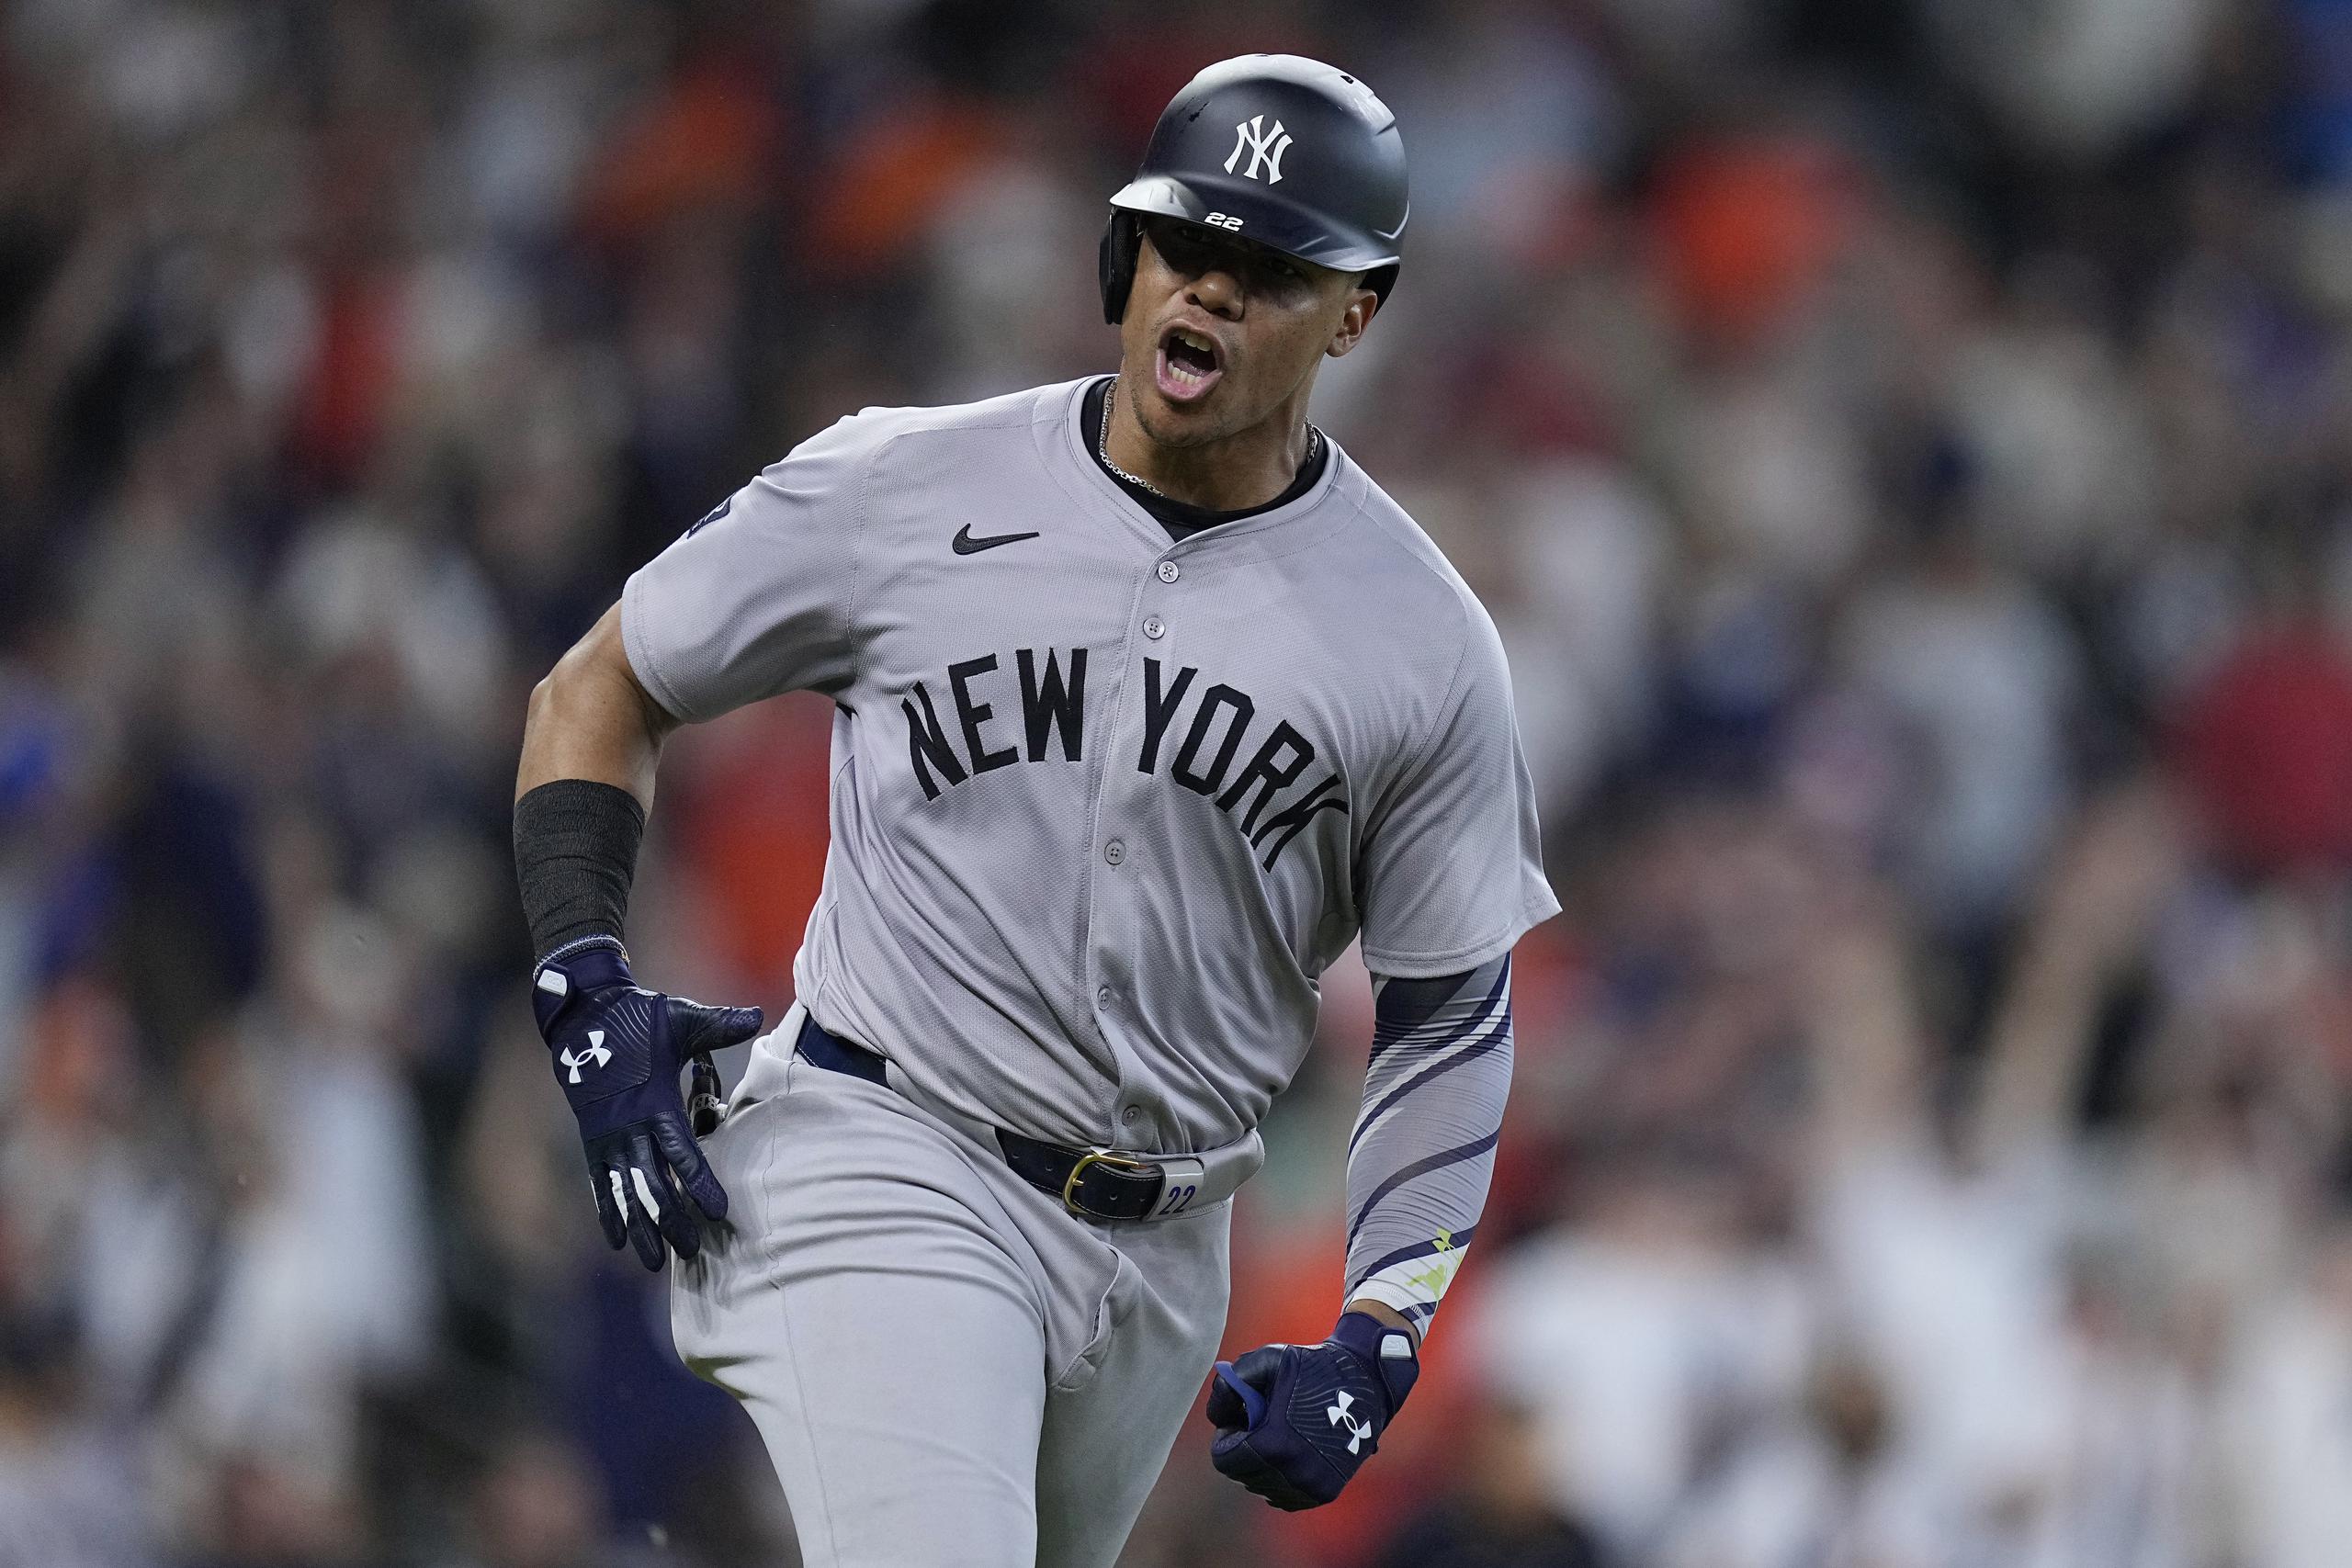 El dominicano Juan Soto de los Yankees de Nueva York celebra luego de conectar un imparable productivo en la novena entrada del juego de béisbol ante los Astros de Houston.